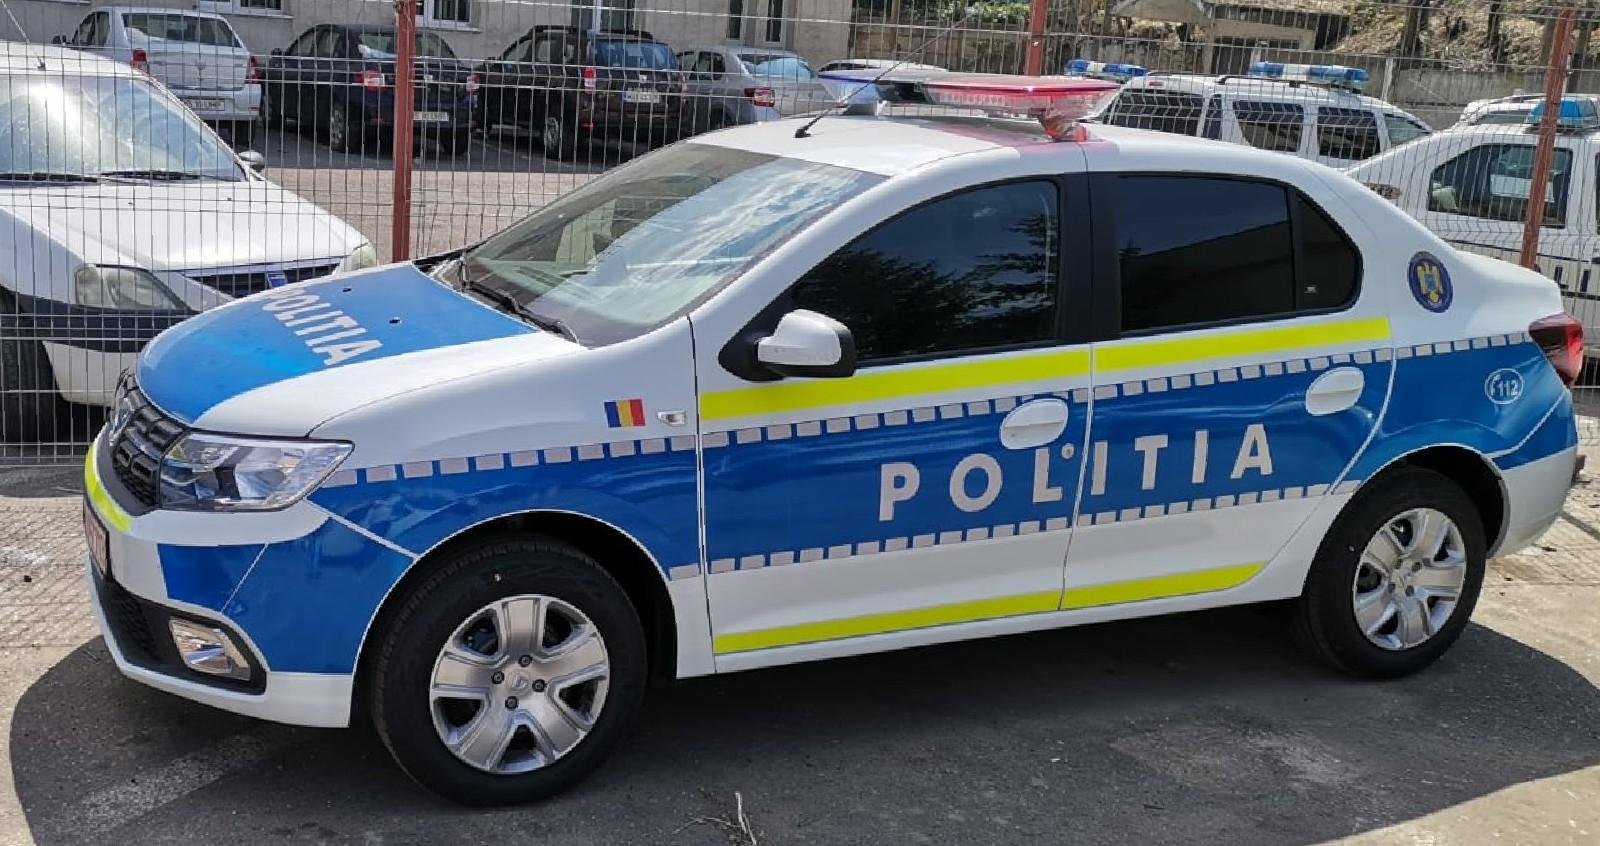  FOTO: Cum arată mașinile noi de Poliție care vor fi văzute circulând prin Iași